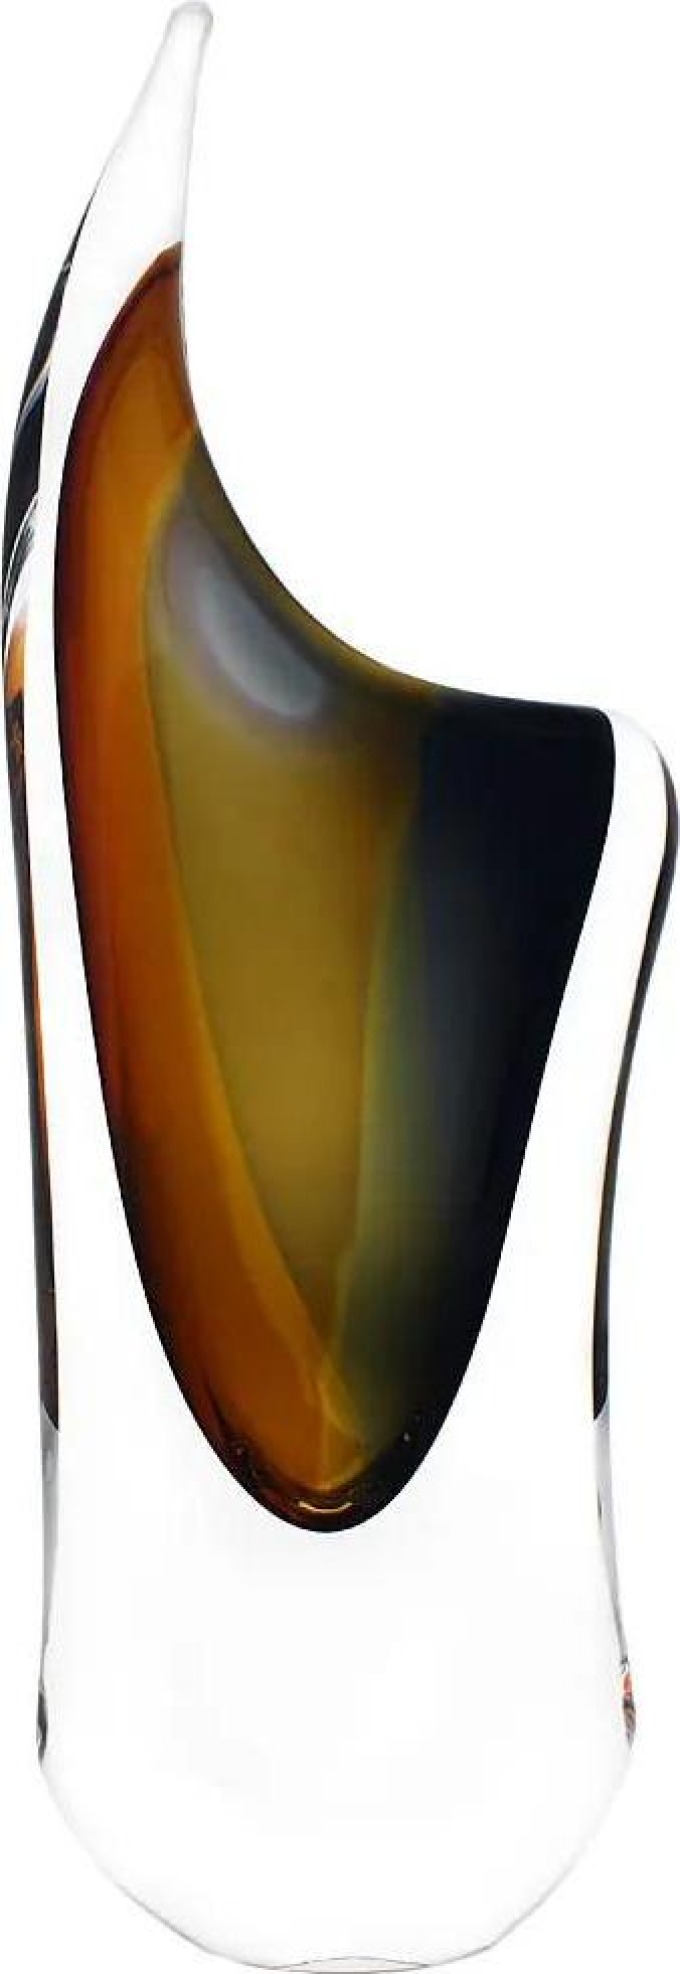 Skleněná váza hutní 04, zlatý topaz a kouřově černá, 34 cm | České hutní sklo od Artcristal Bohemia